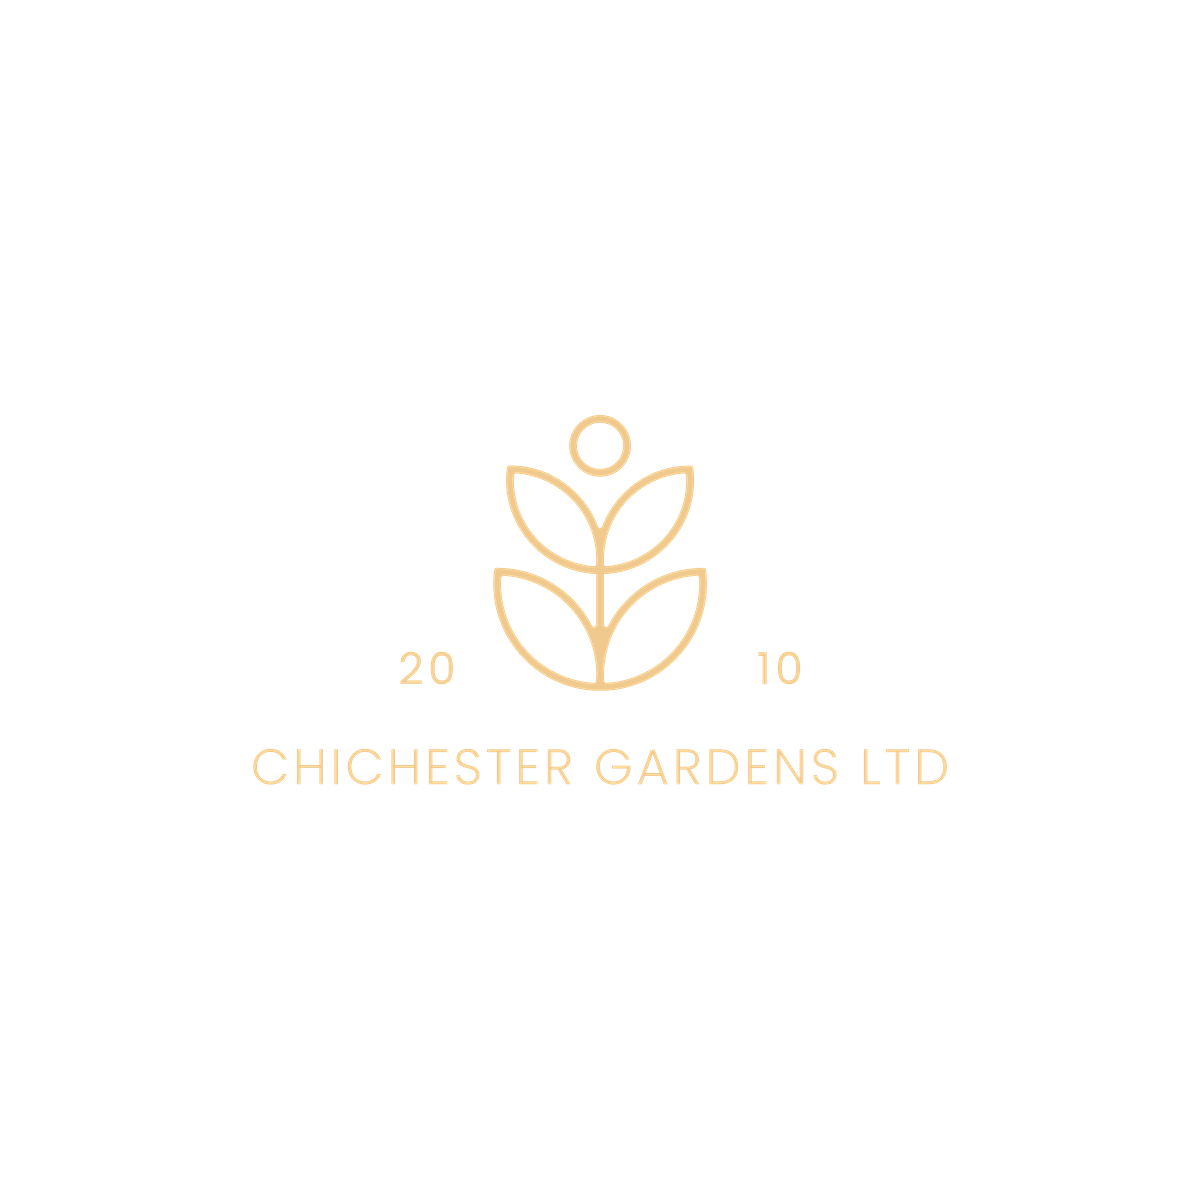 Chichester Gardens Ltd